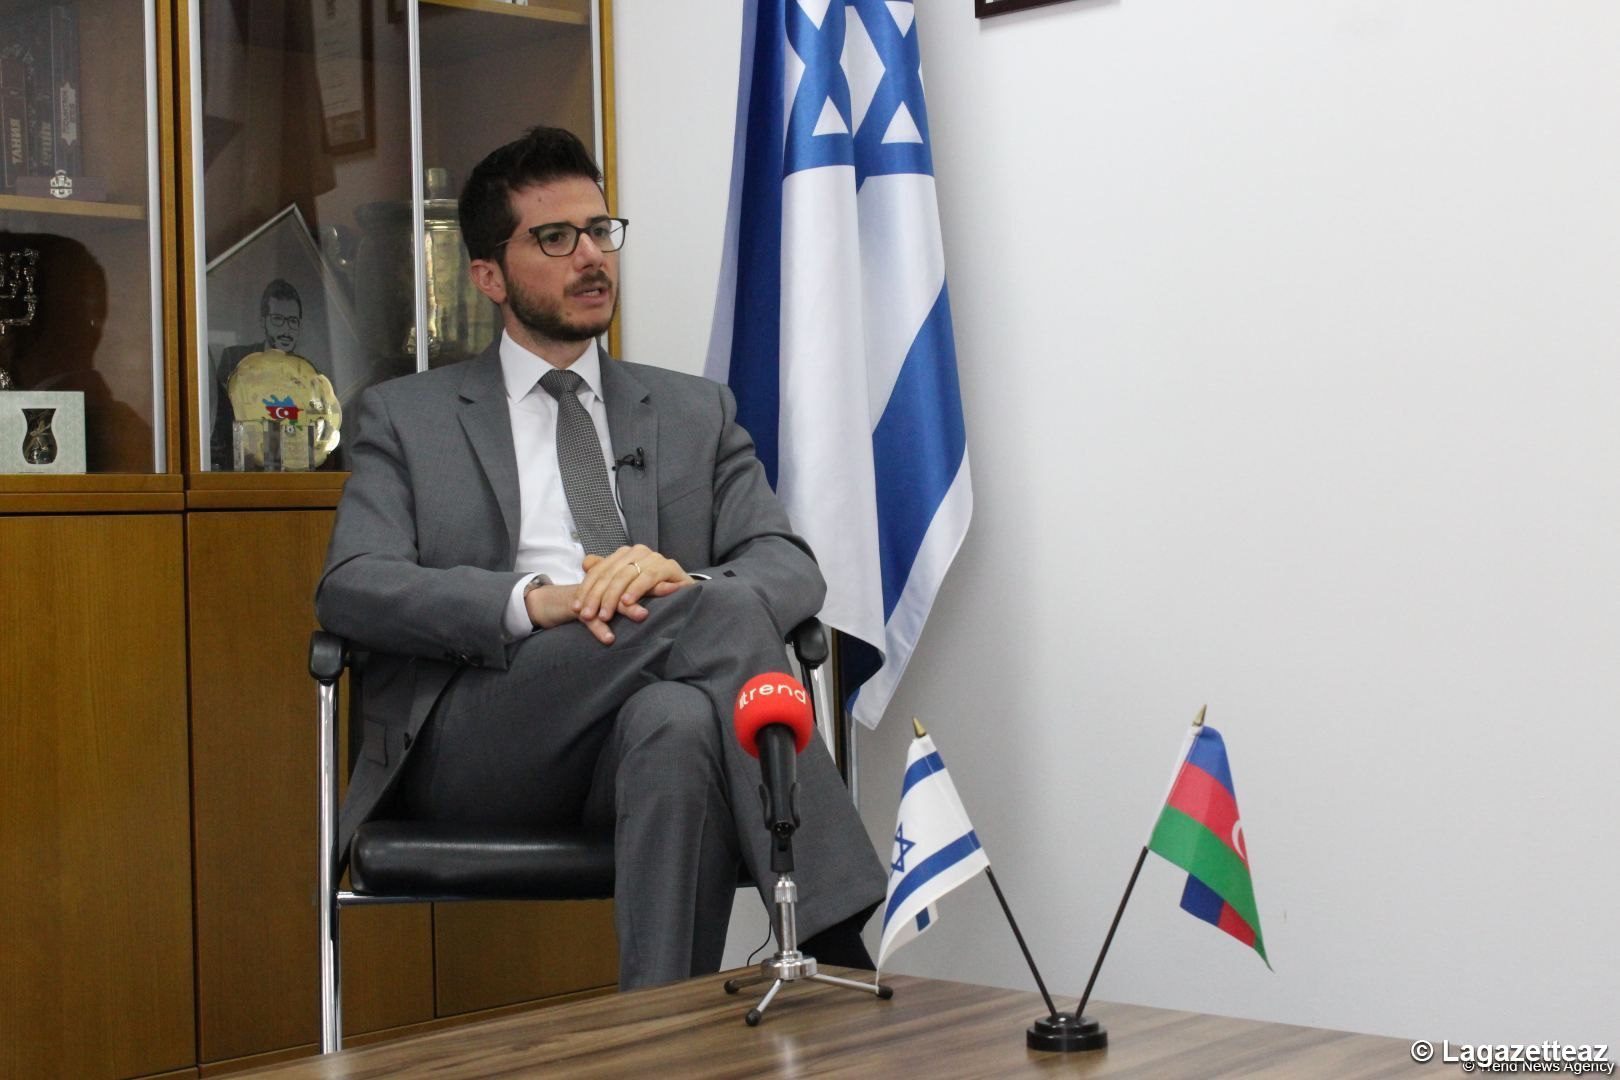 L'ouverture de la Mission commerciale de l'Azerbaïdjan en Israël est un événement historique, selon l'Ambassadeur israélien